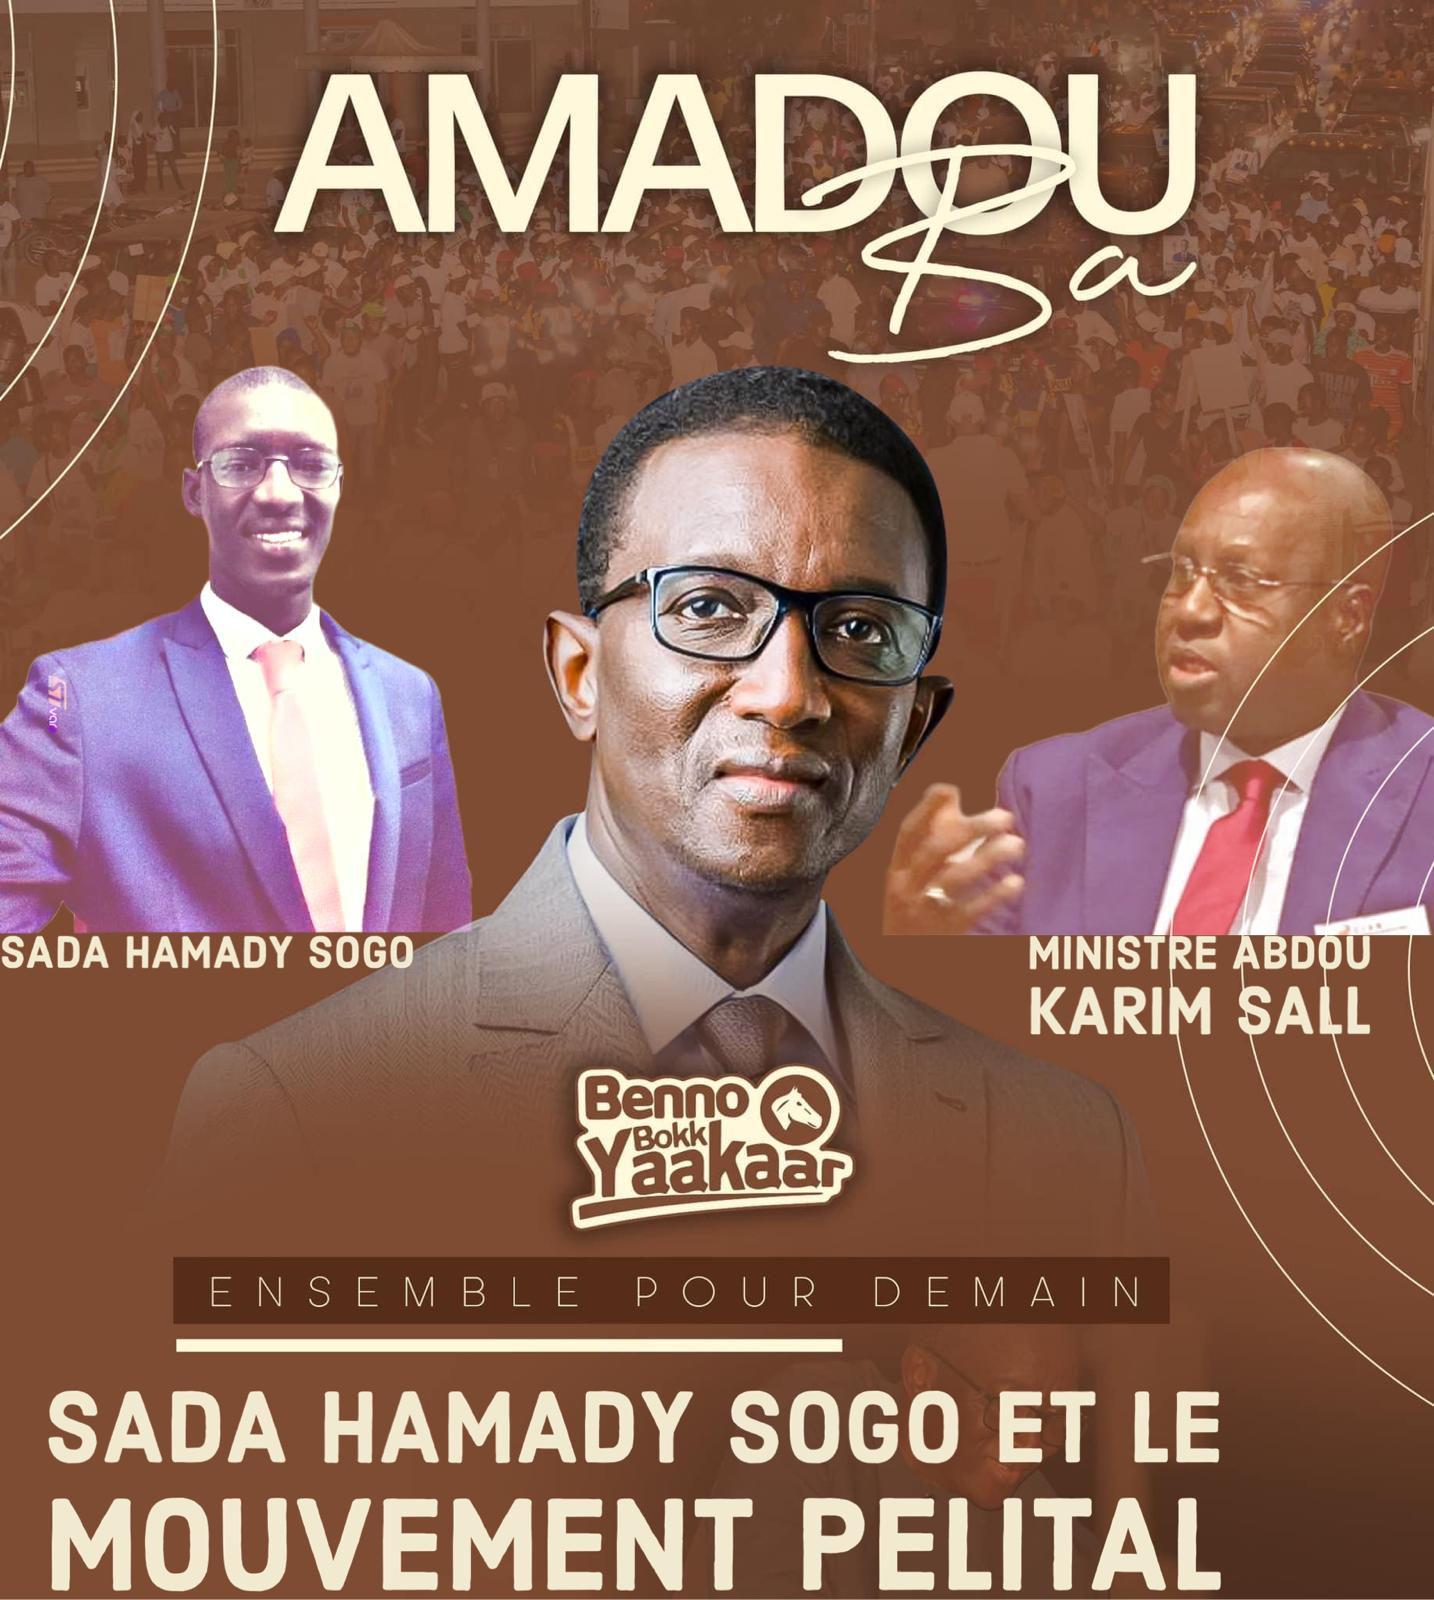 Kanel : Sada Hamady SOGO rejoint Benno et soutient le candidat Amadou BA derrière Abdou Karim Sall 